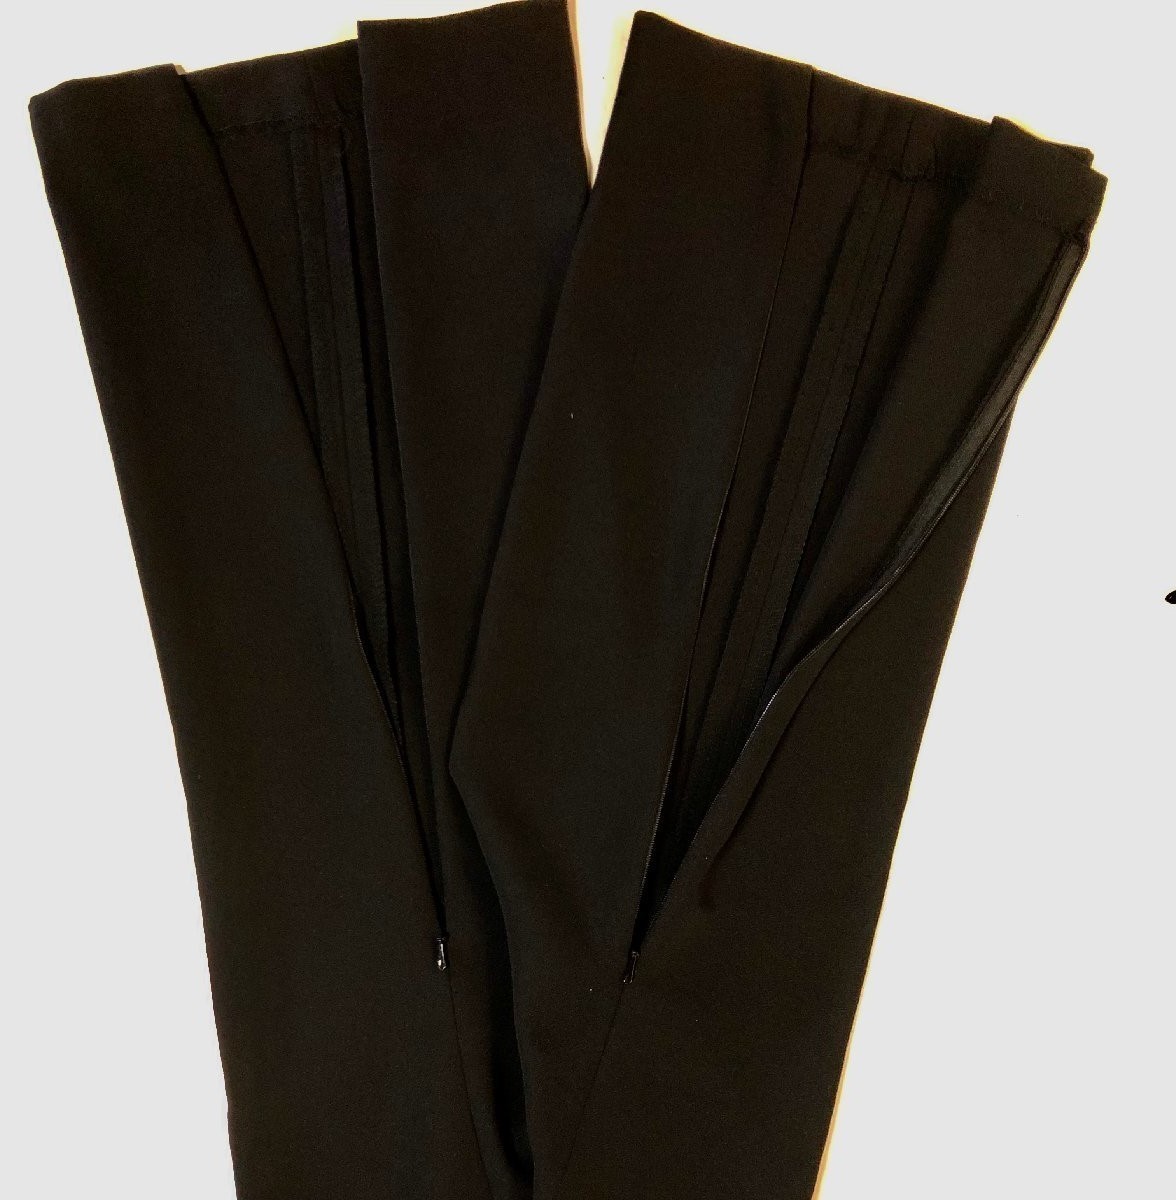  бесплатная доставка 4L сделано в Японии женский брюки кромка застежка-молния имеется колени ..li - bili уход через . пара горячая вода новый товар чёрный цвет большой размер 